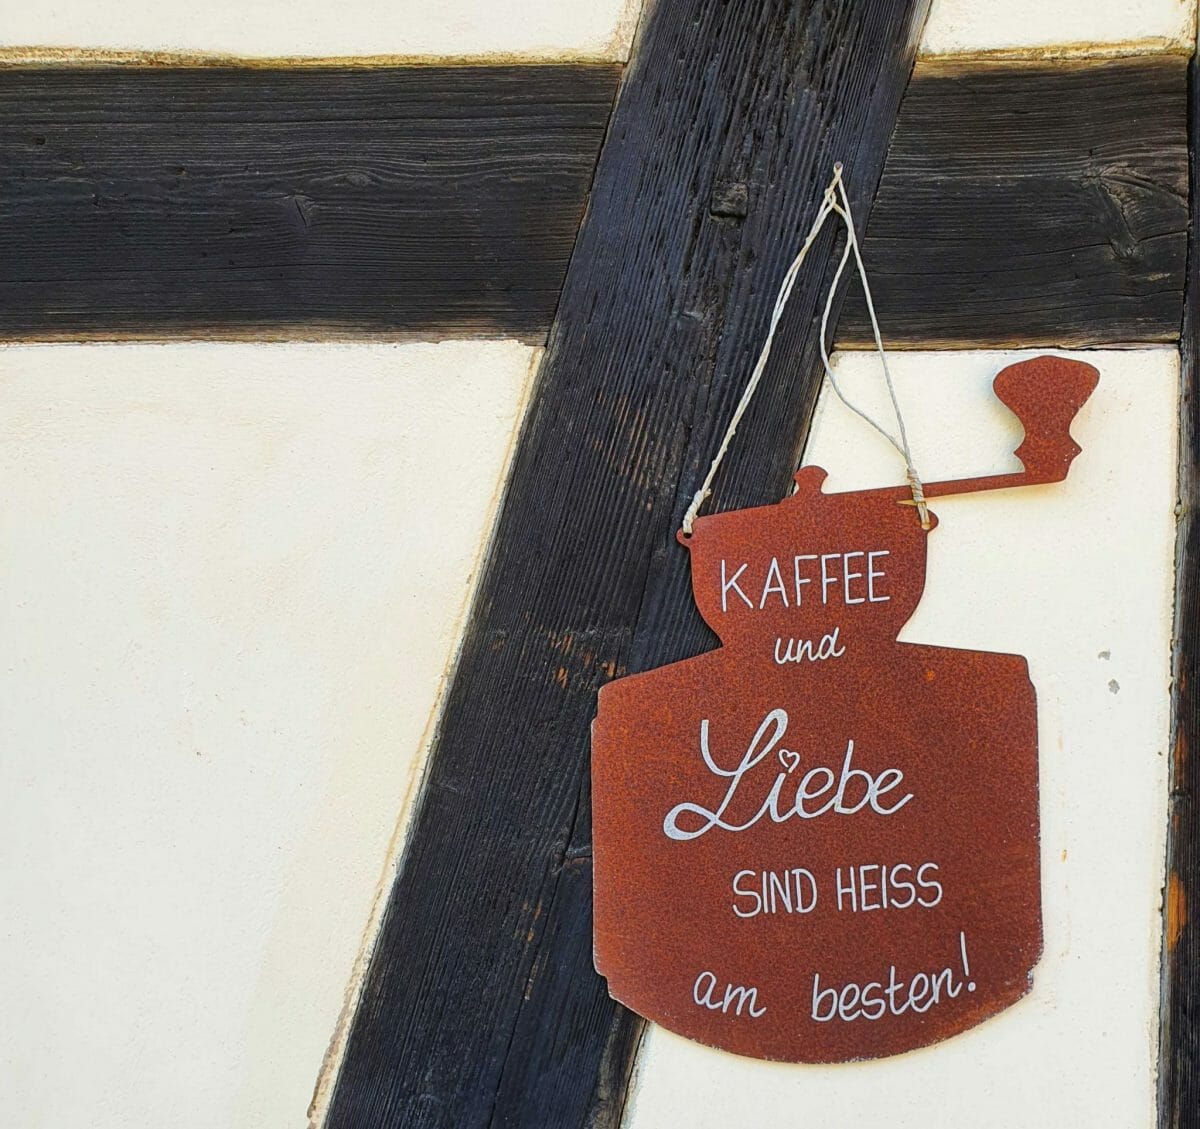 Kaffee-Schild an der Fassade, Foto: Maike Steuer